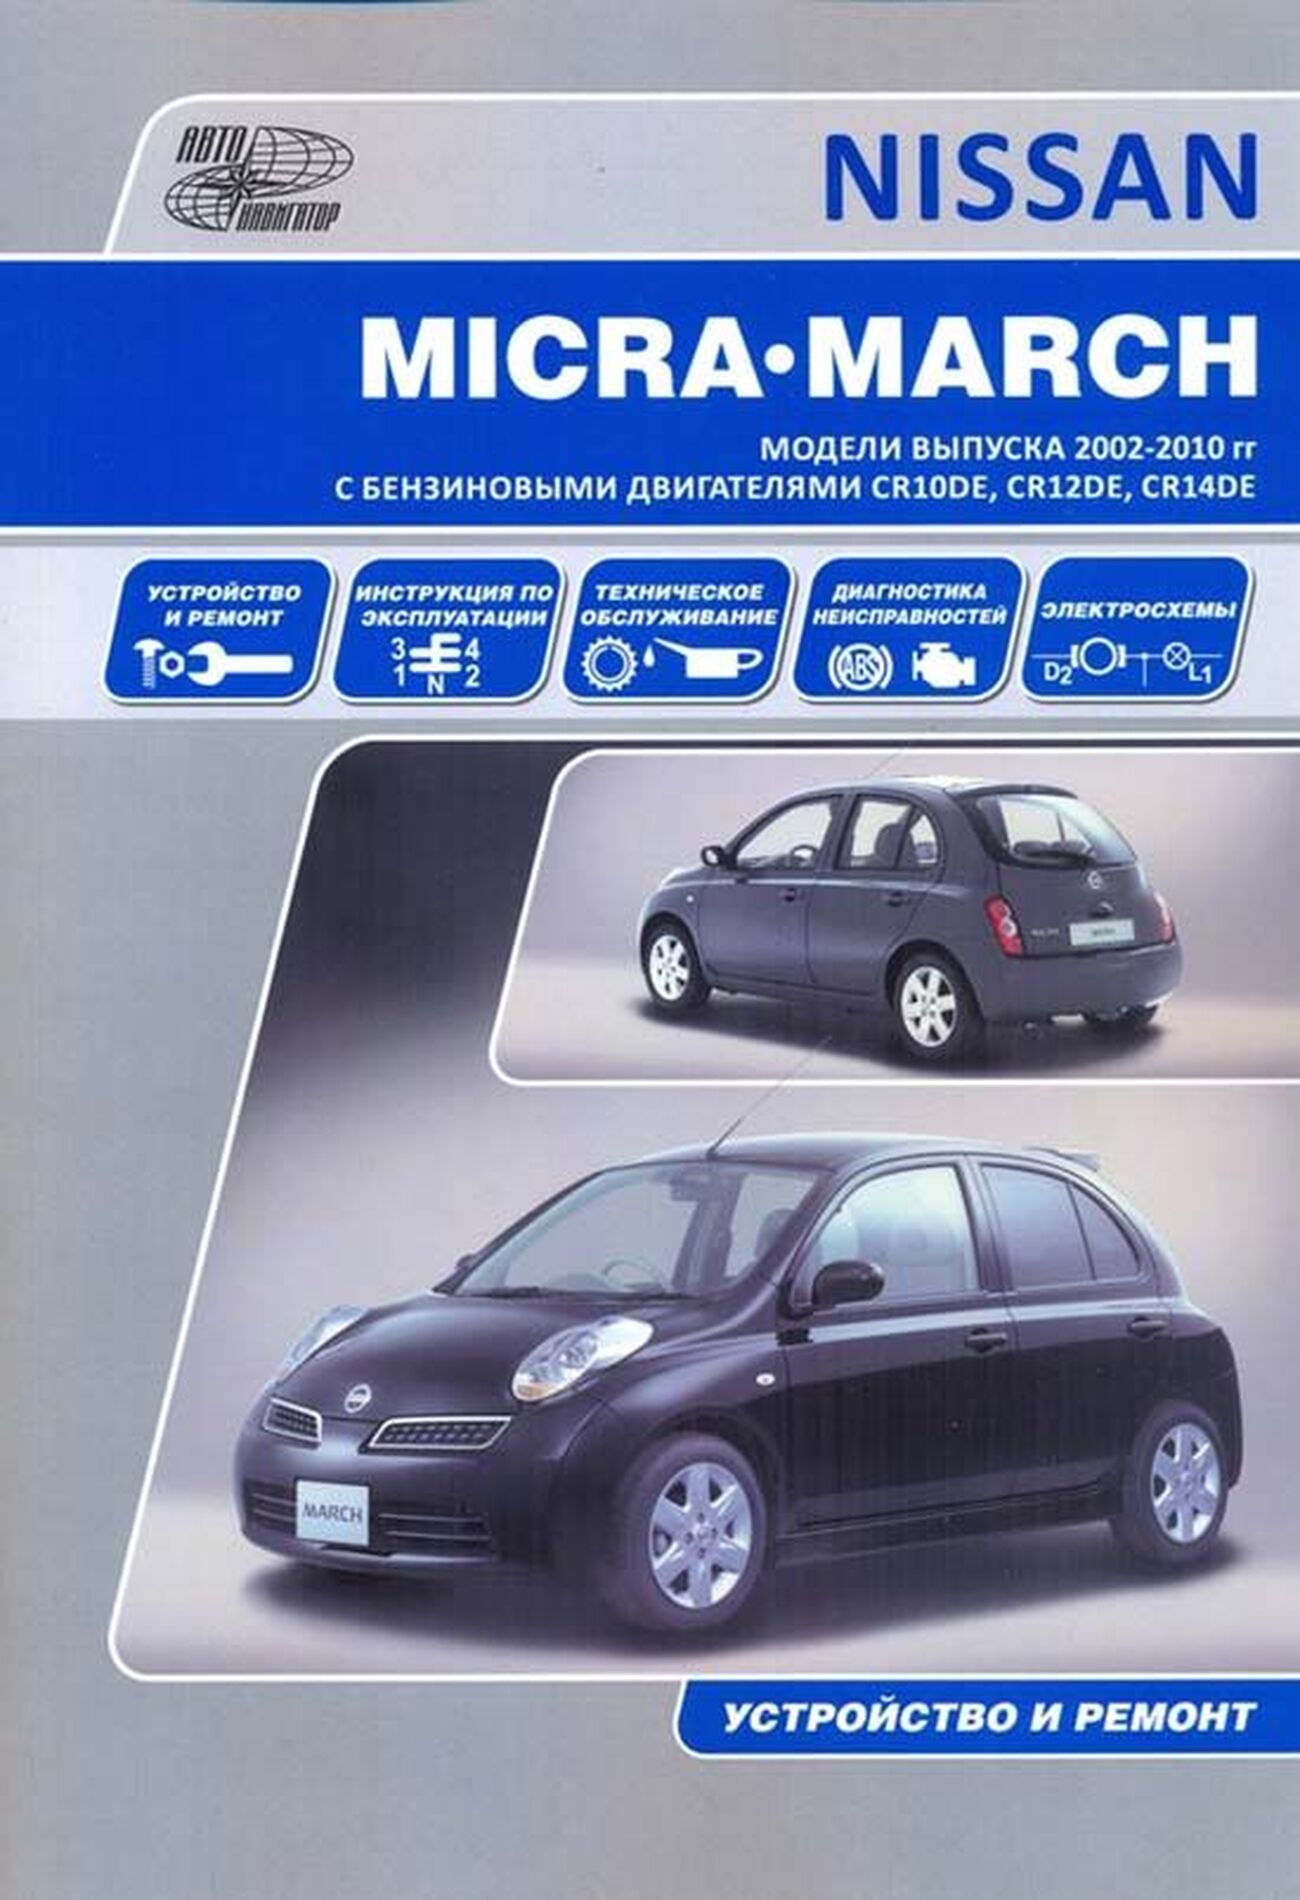 Книга: NISSAN MARCH / MICRA (б) с 2002 г.в., рем., экспл., то | Автонавигатор